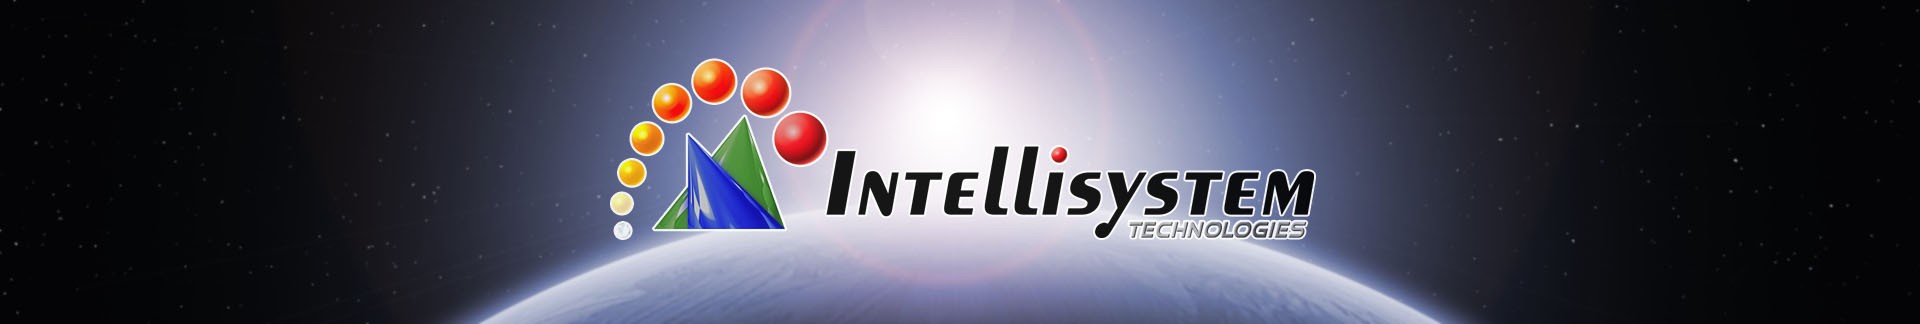 IT-L05-IP Intellisystem